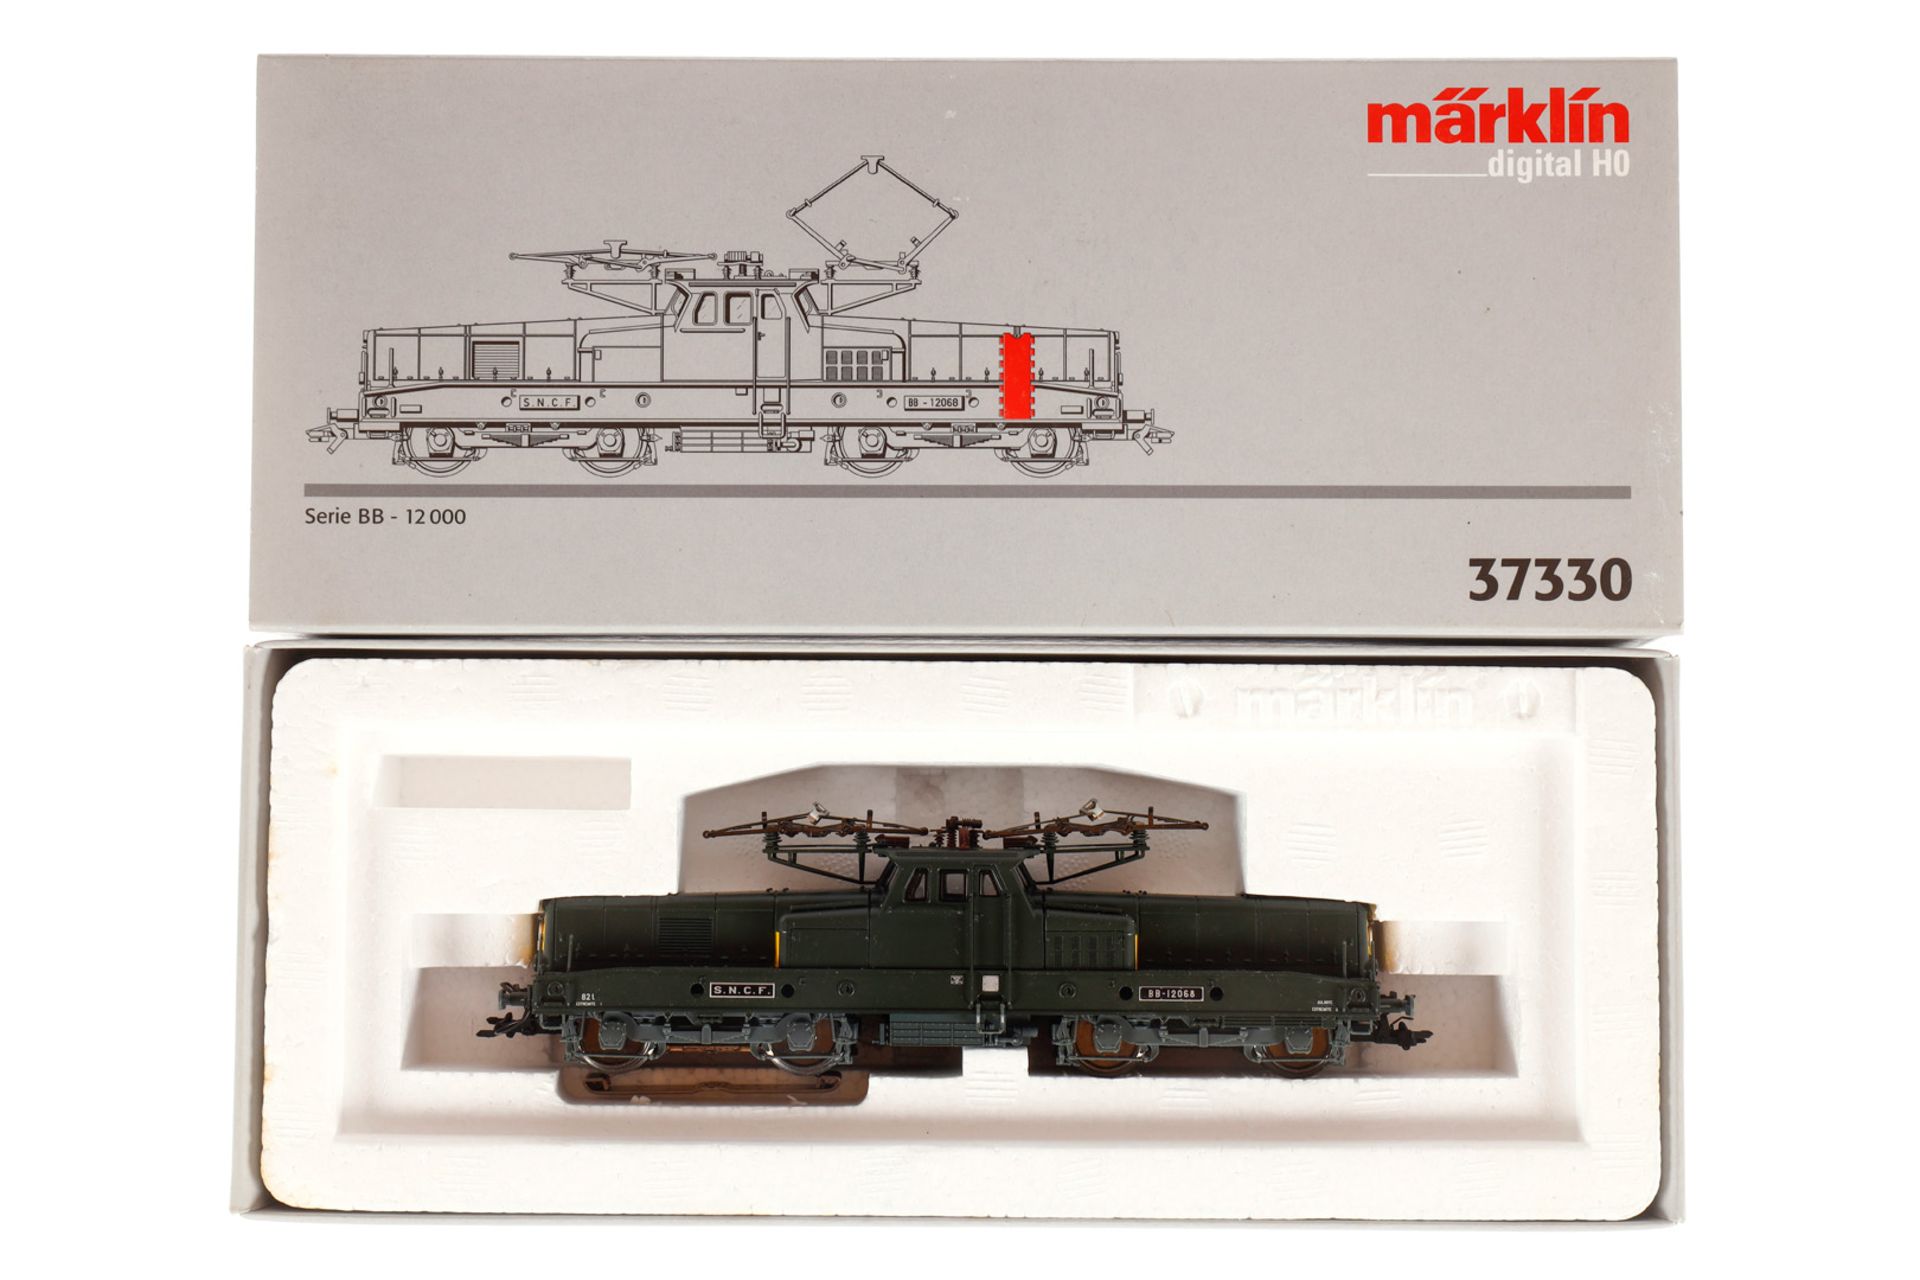 Märklin Digital E-Lok ”BB-12068” 37330, Spur H0, dunkelgrün, Alterungsspuren, OK, Z 2